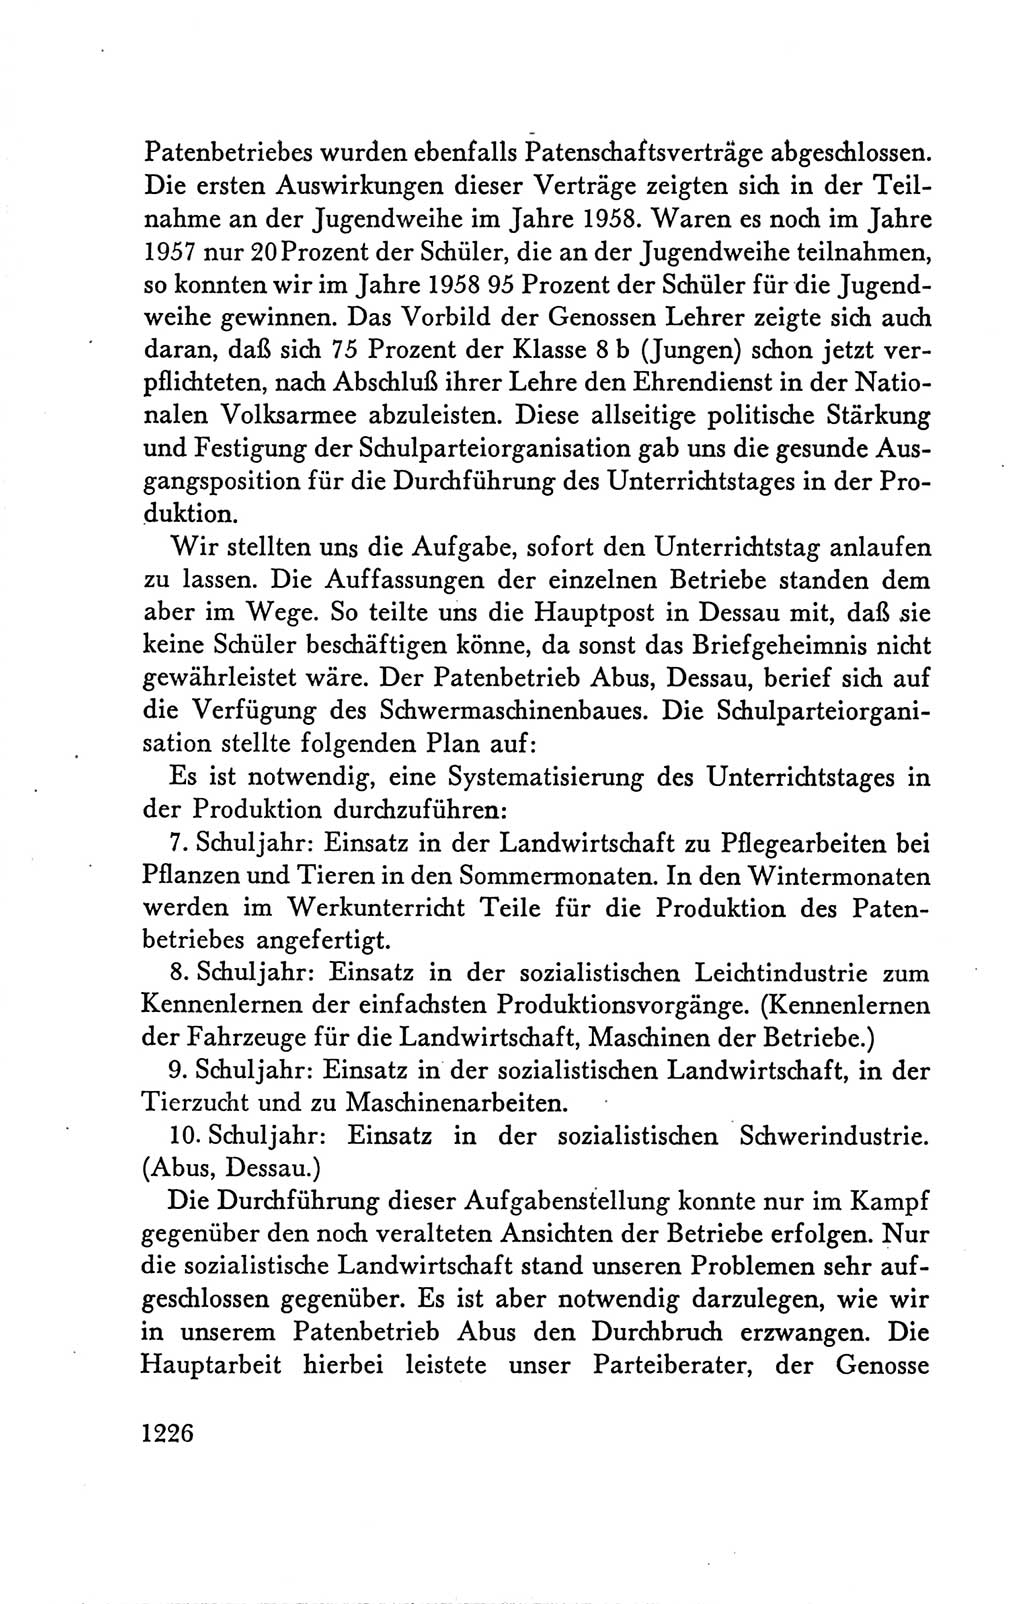 Protokoll der Verhandlungen des Ⅴ. Parteitages der Sozialistischen Einheitspartei Deutschlands (SED) [Deutsche Demokratische Republik (DDR)] 1958, Seite 1226